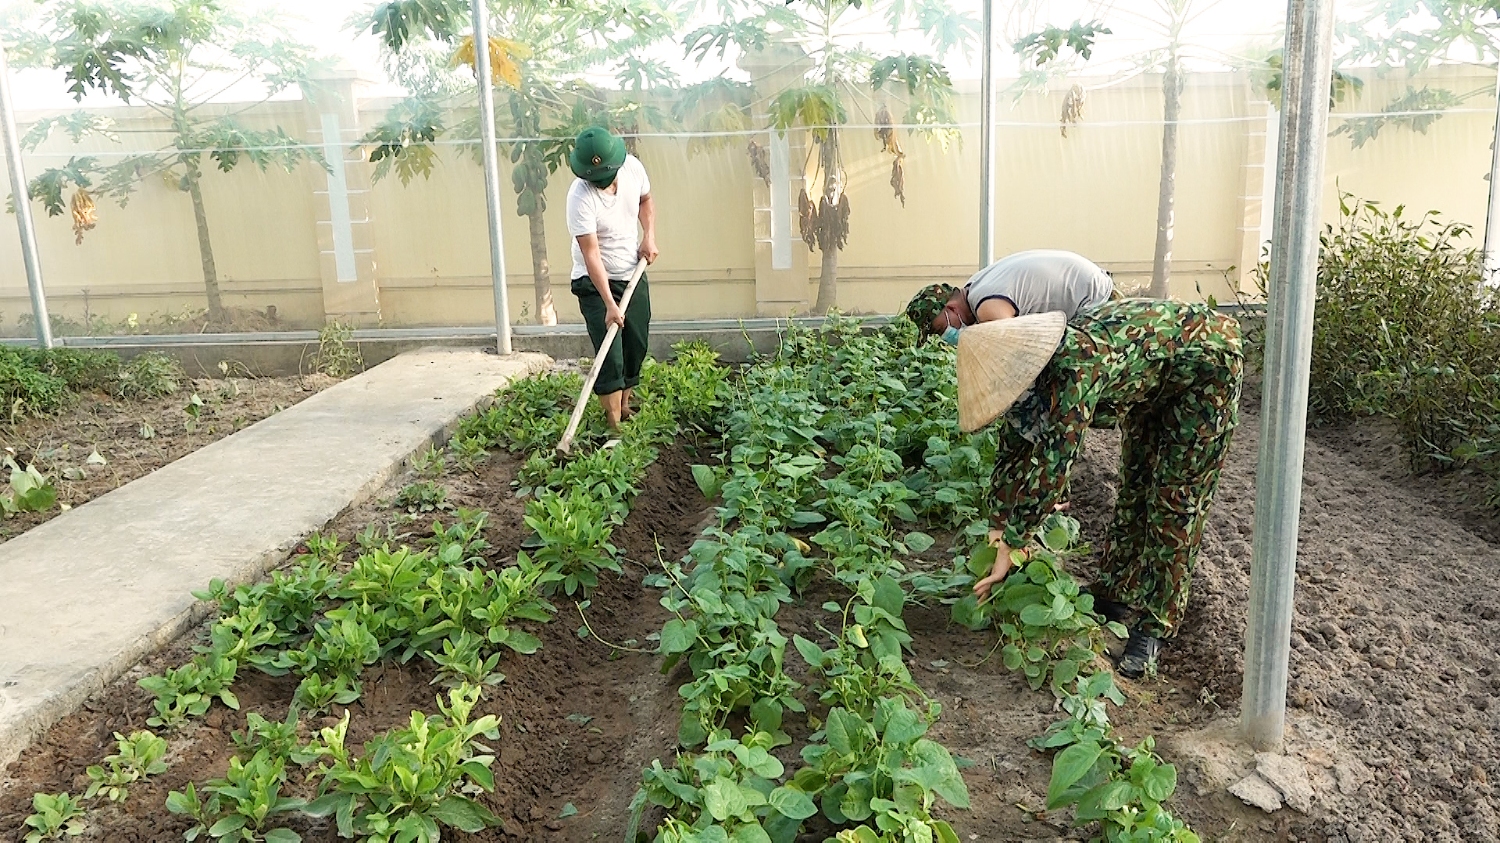 Cán bộ, chiến sỹ Ban CHQS thị xã chăm sóc vườn rau